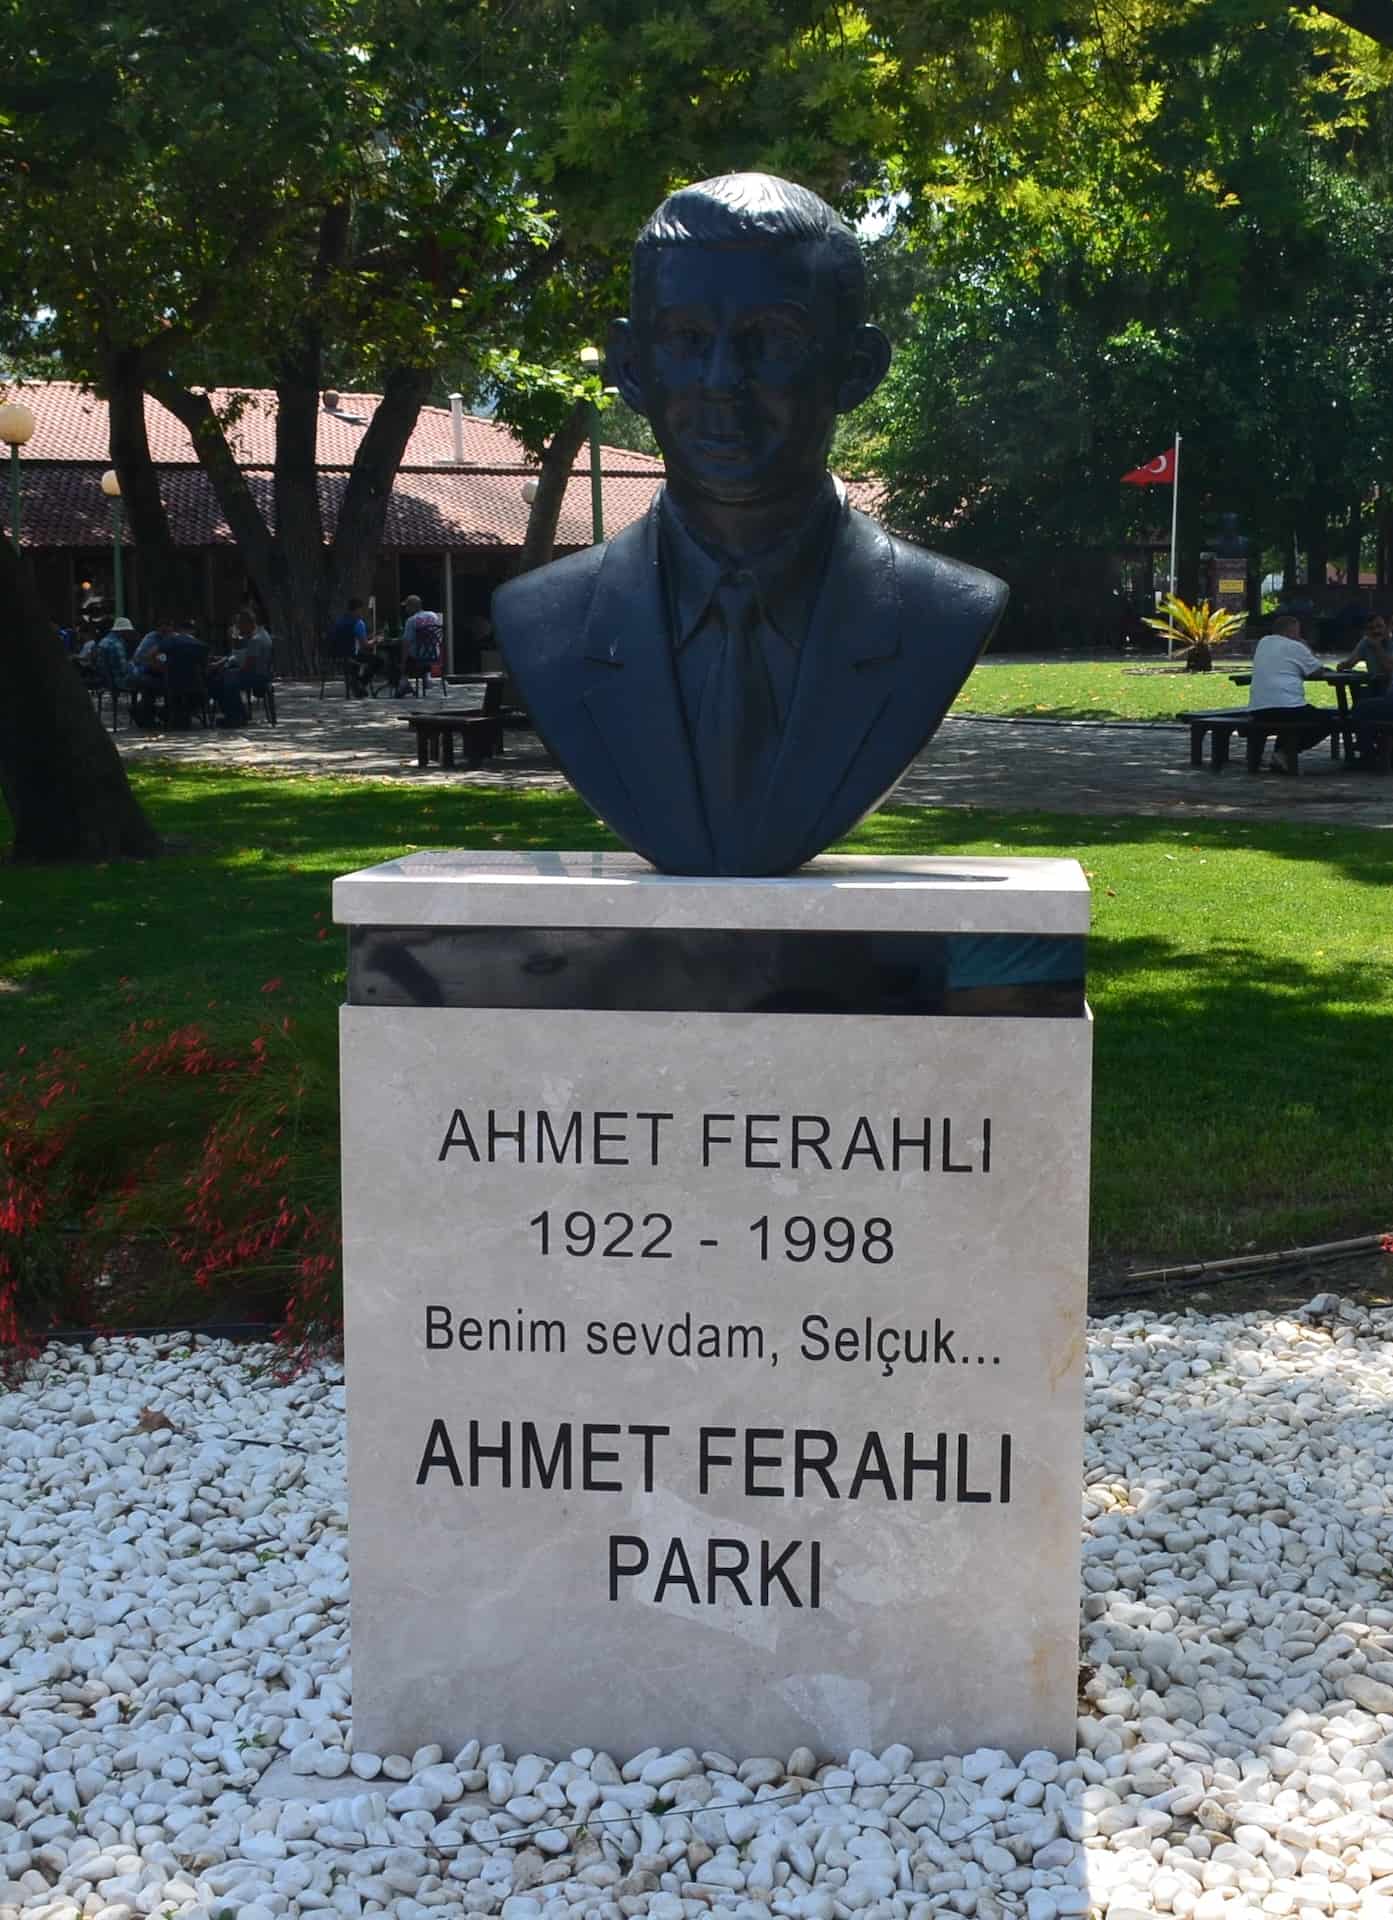 Bust of Ahmet Ferahlı